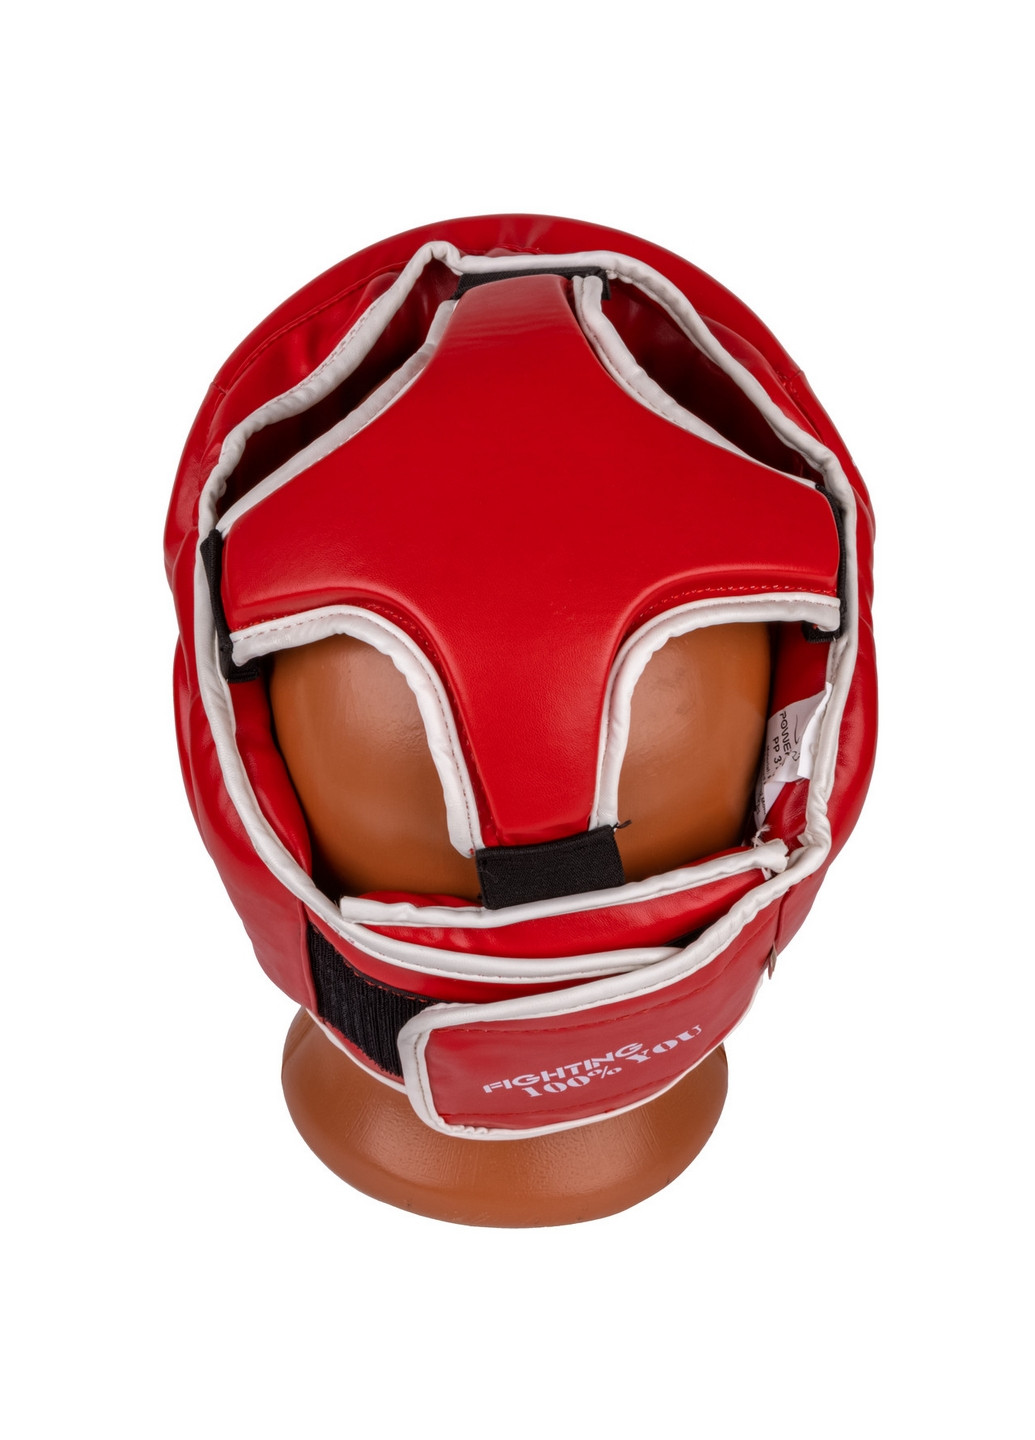 Боксерский шлем тренировочный XS PowerPlay (260515069)